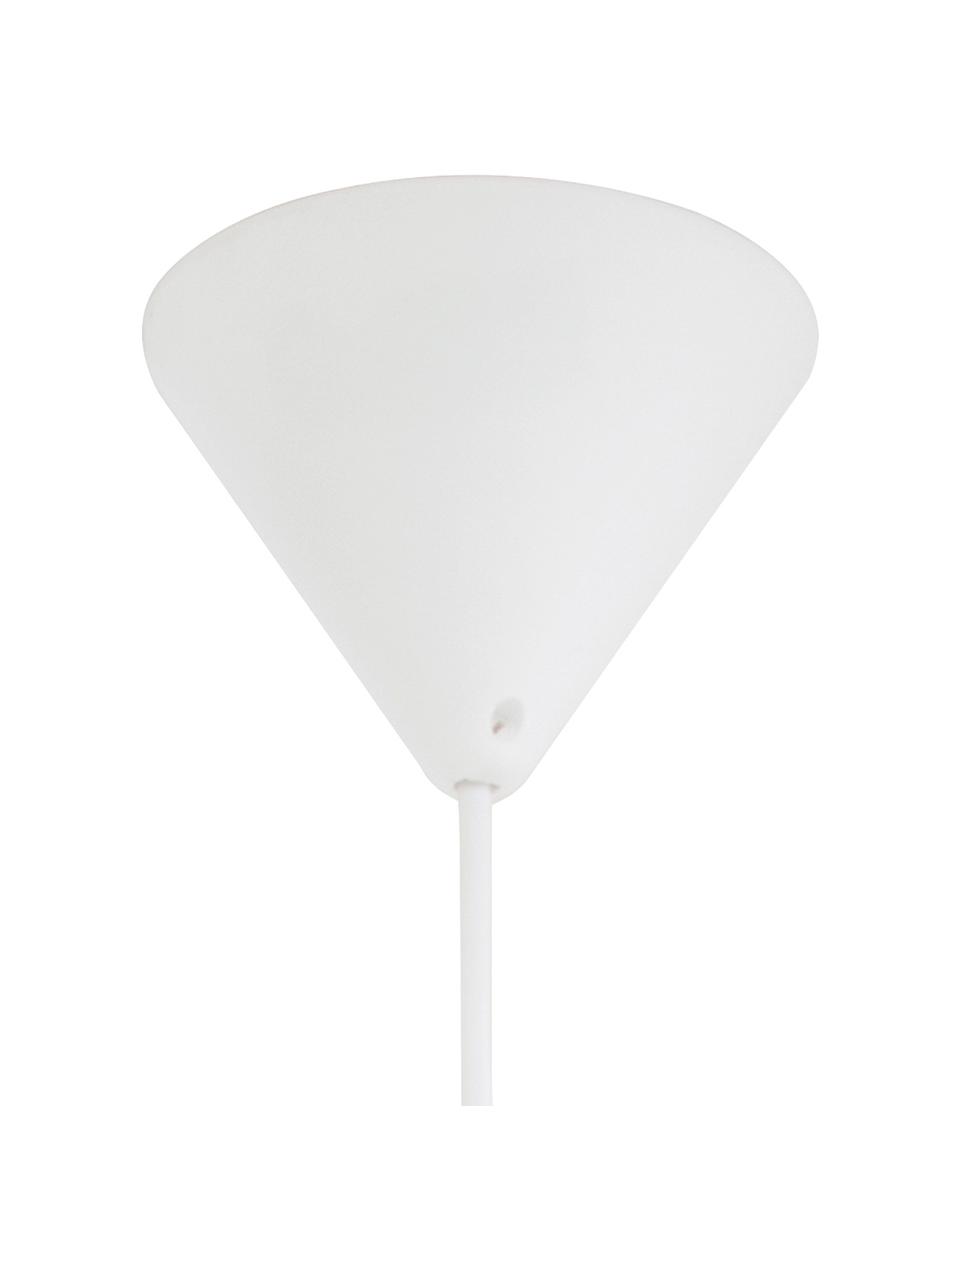 Lampa wisząca ze skórzanym paskiem Bow, Biały, S 19 x W 20 cm